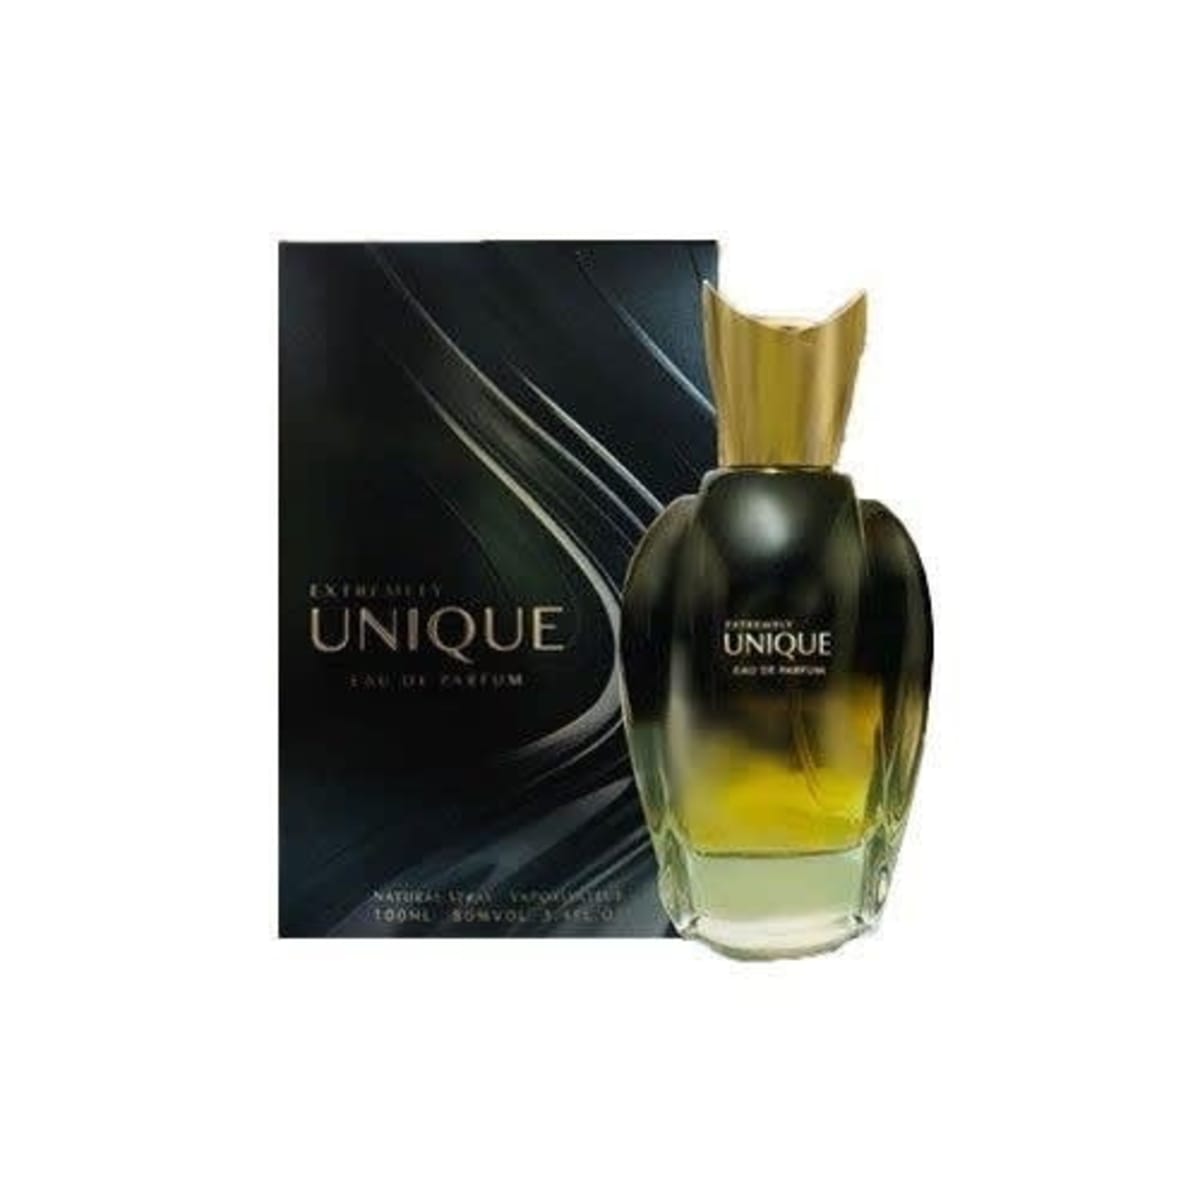 Extremely unique духи. Unique духи мужские. Unique Luxury Perfume. Luxury Parfum духи unique Perfume.